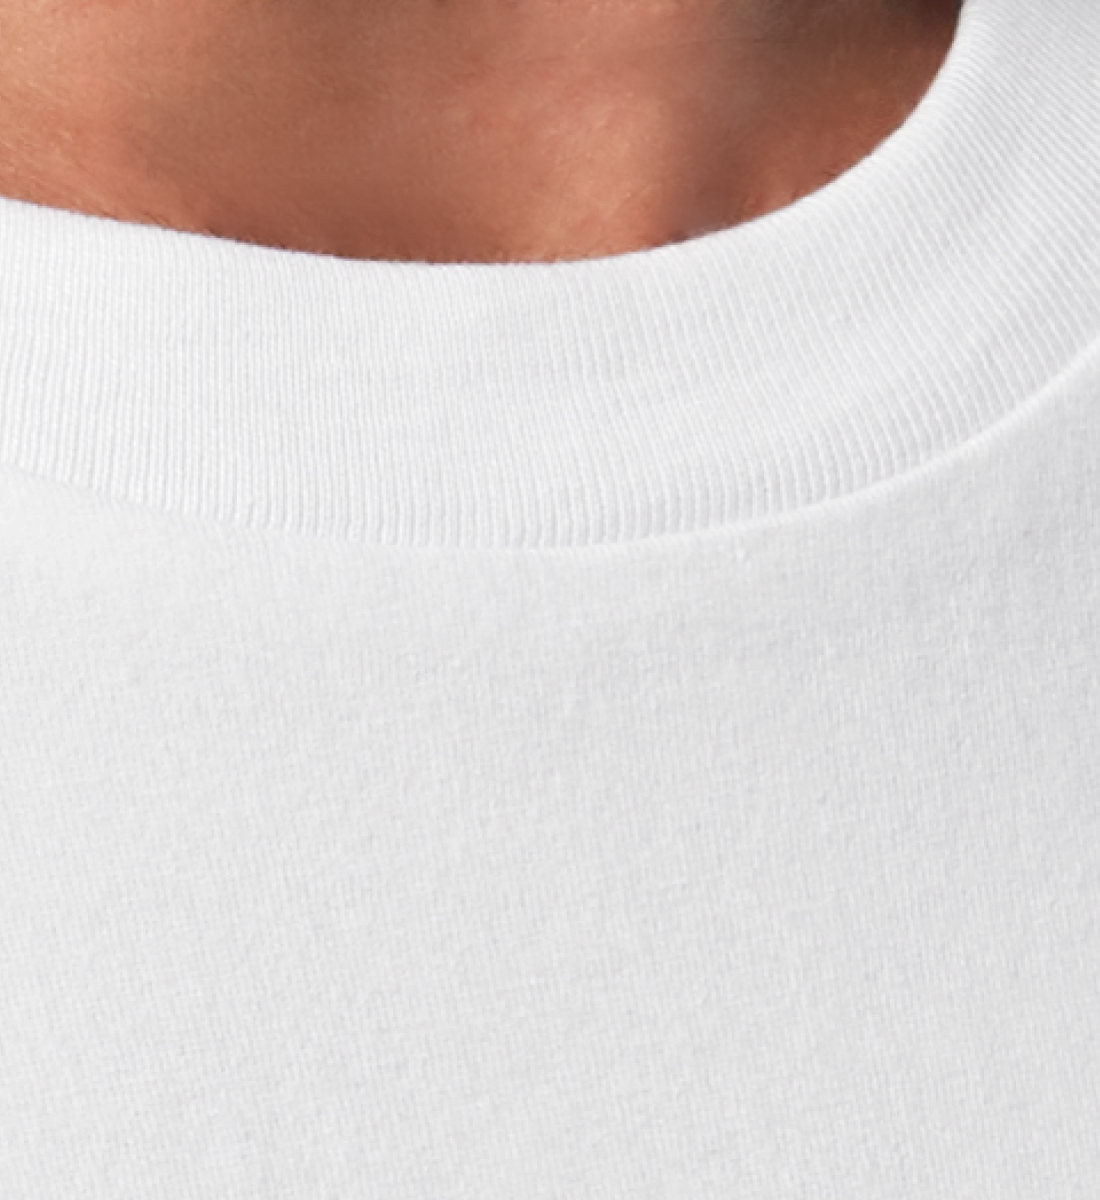 Weißes T-Shirt Unisex Relaxed Fit für Frauen und Männer bedruckt mit dem Design der Roger Rockawoo Kollektion Ufo Alien Guitarist outaspace gig